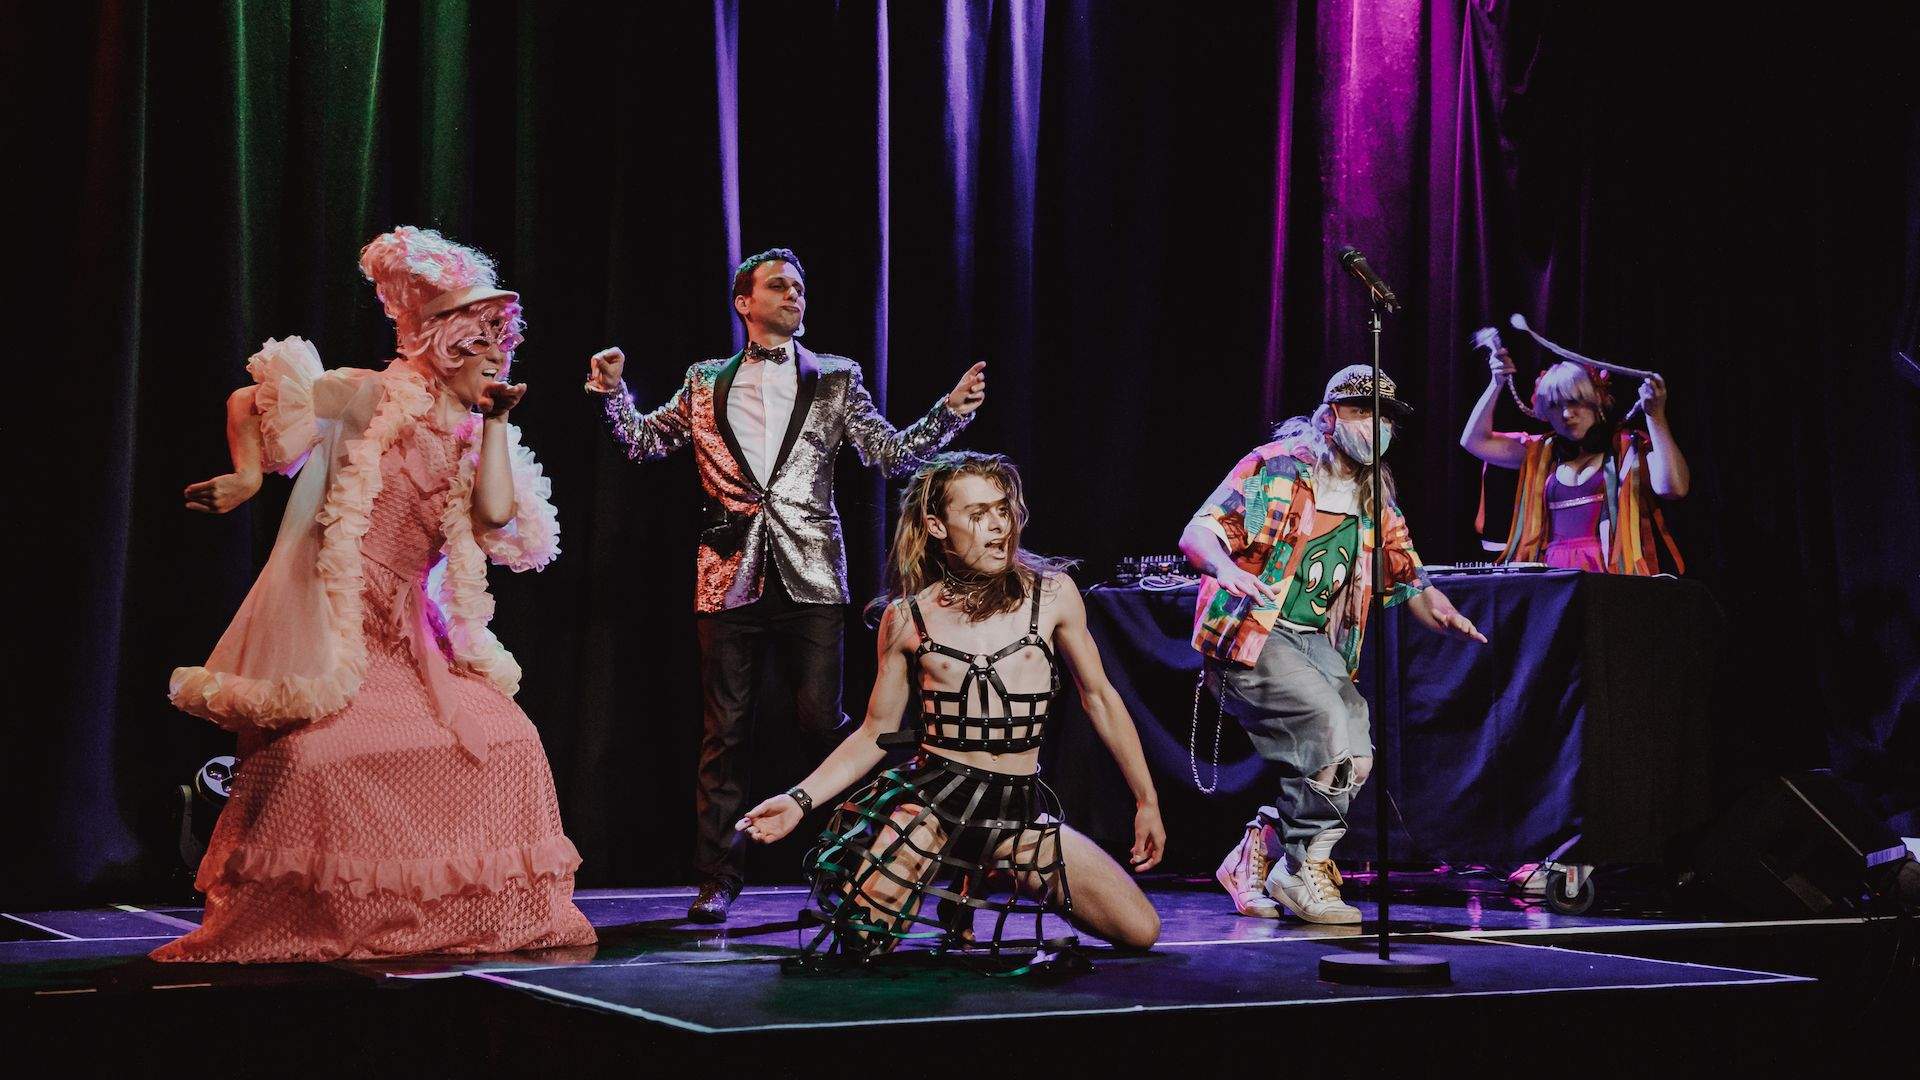 Melbourne Fringe Festival Kicks Off Its 2021 Program Next Month